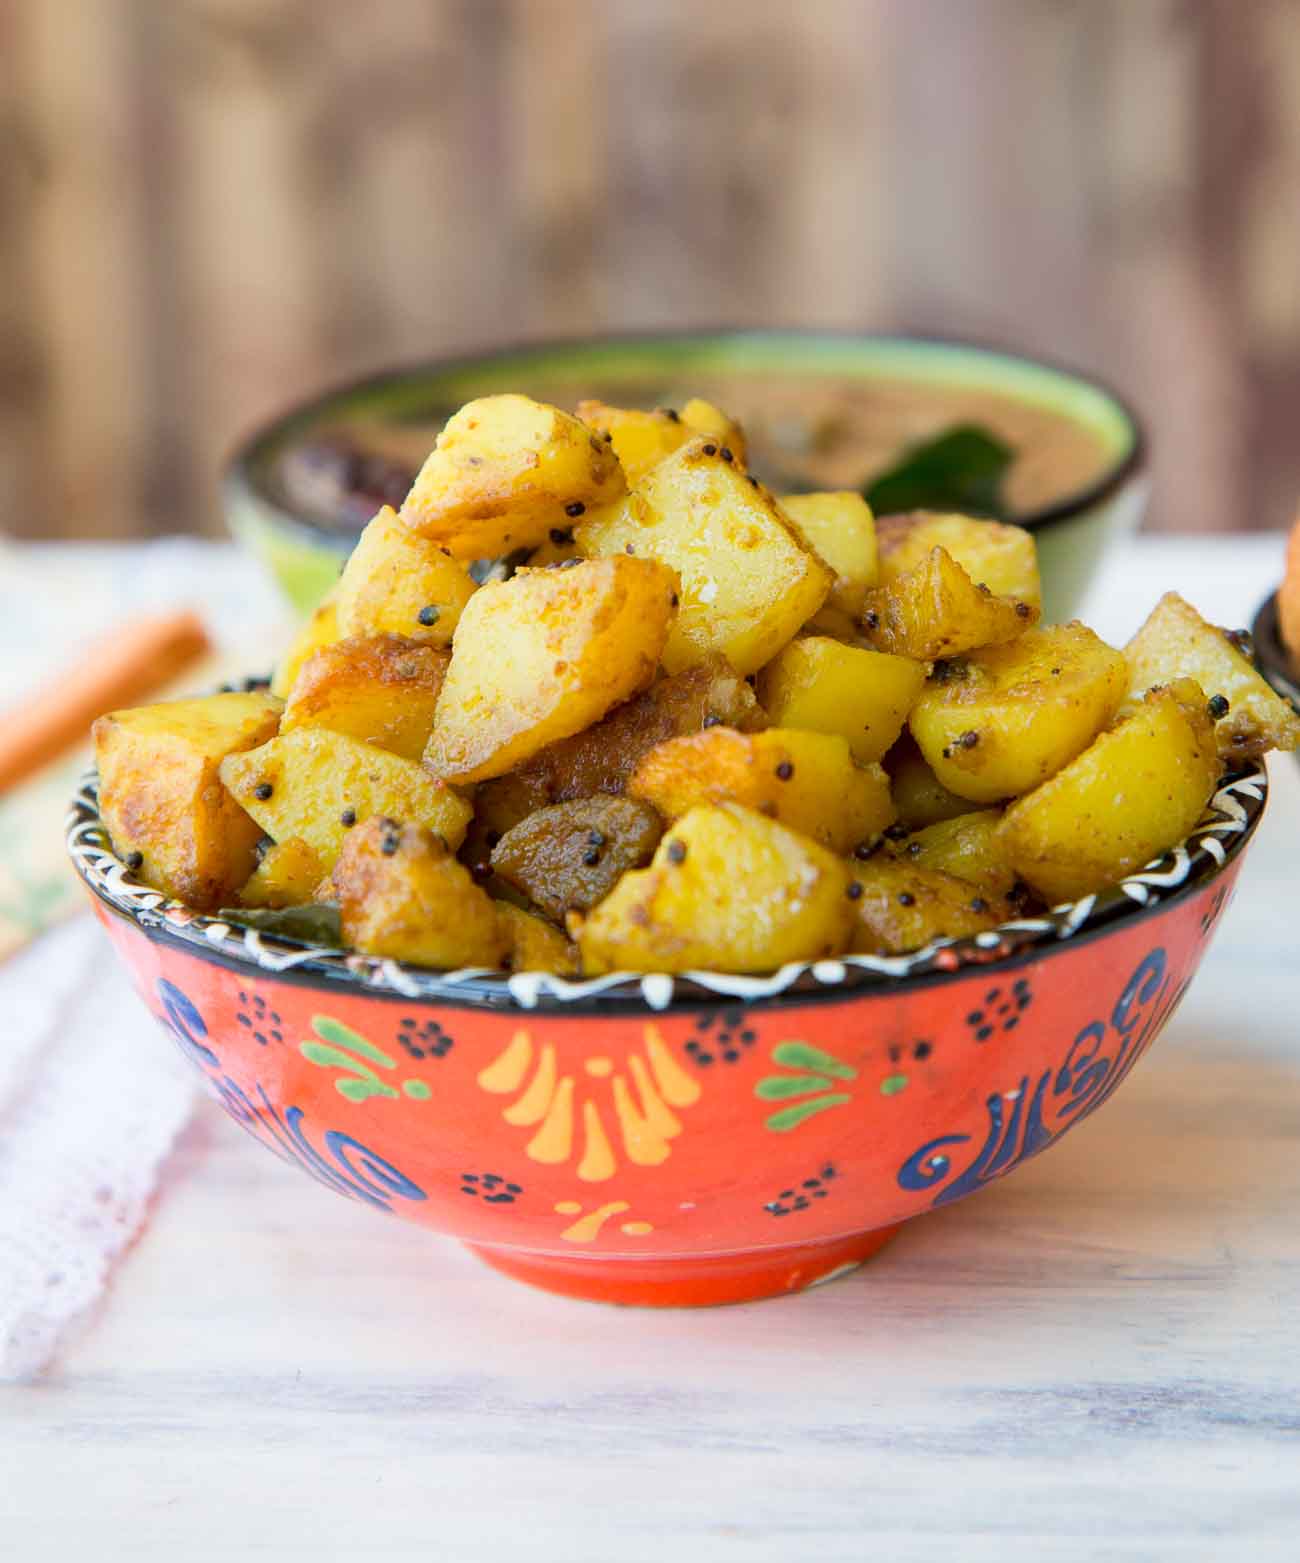 तीखा आलू रोस्ट रेसिपी - Spicy Potato Roast Recipe (Recipe In Hindi)